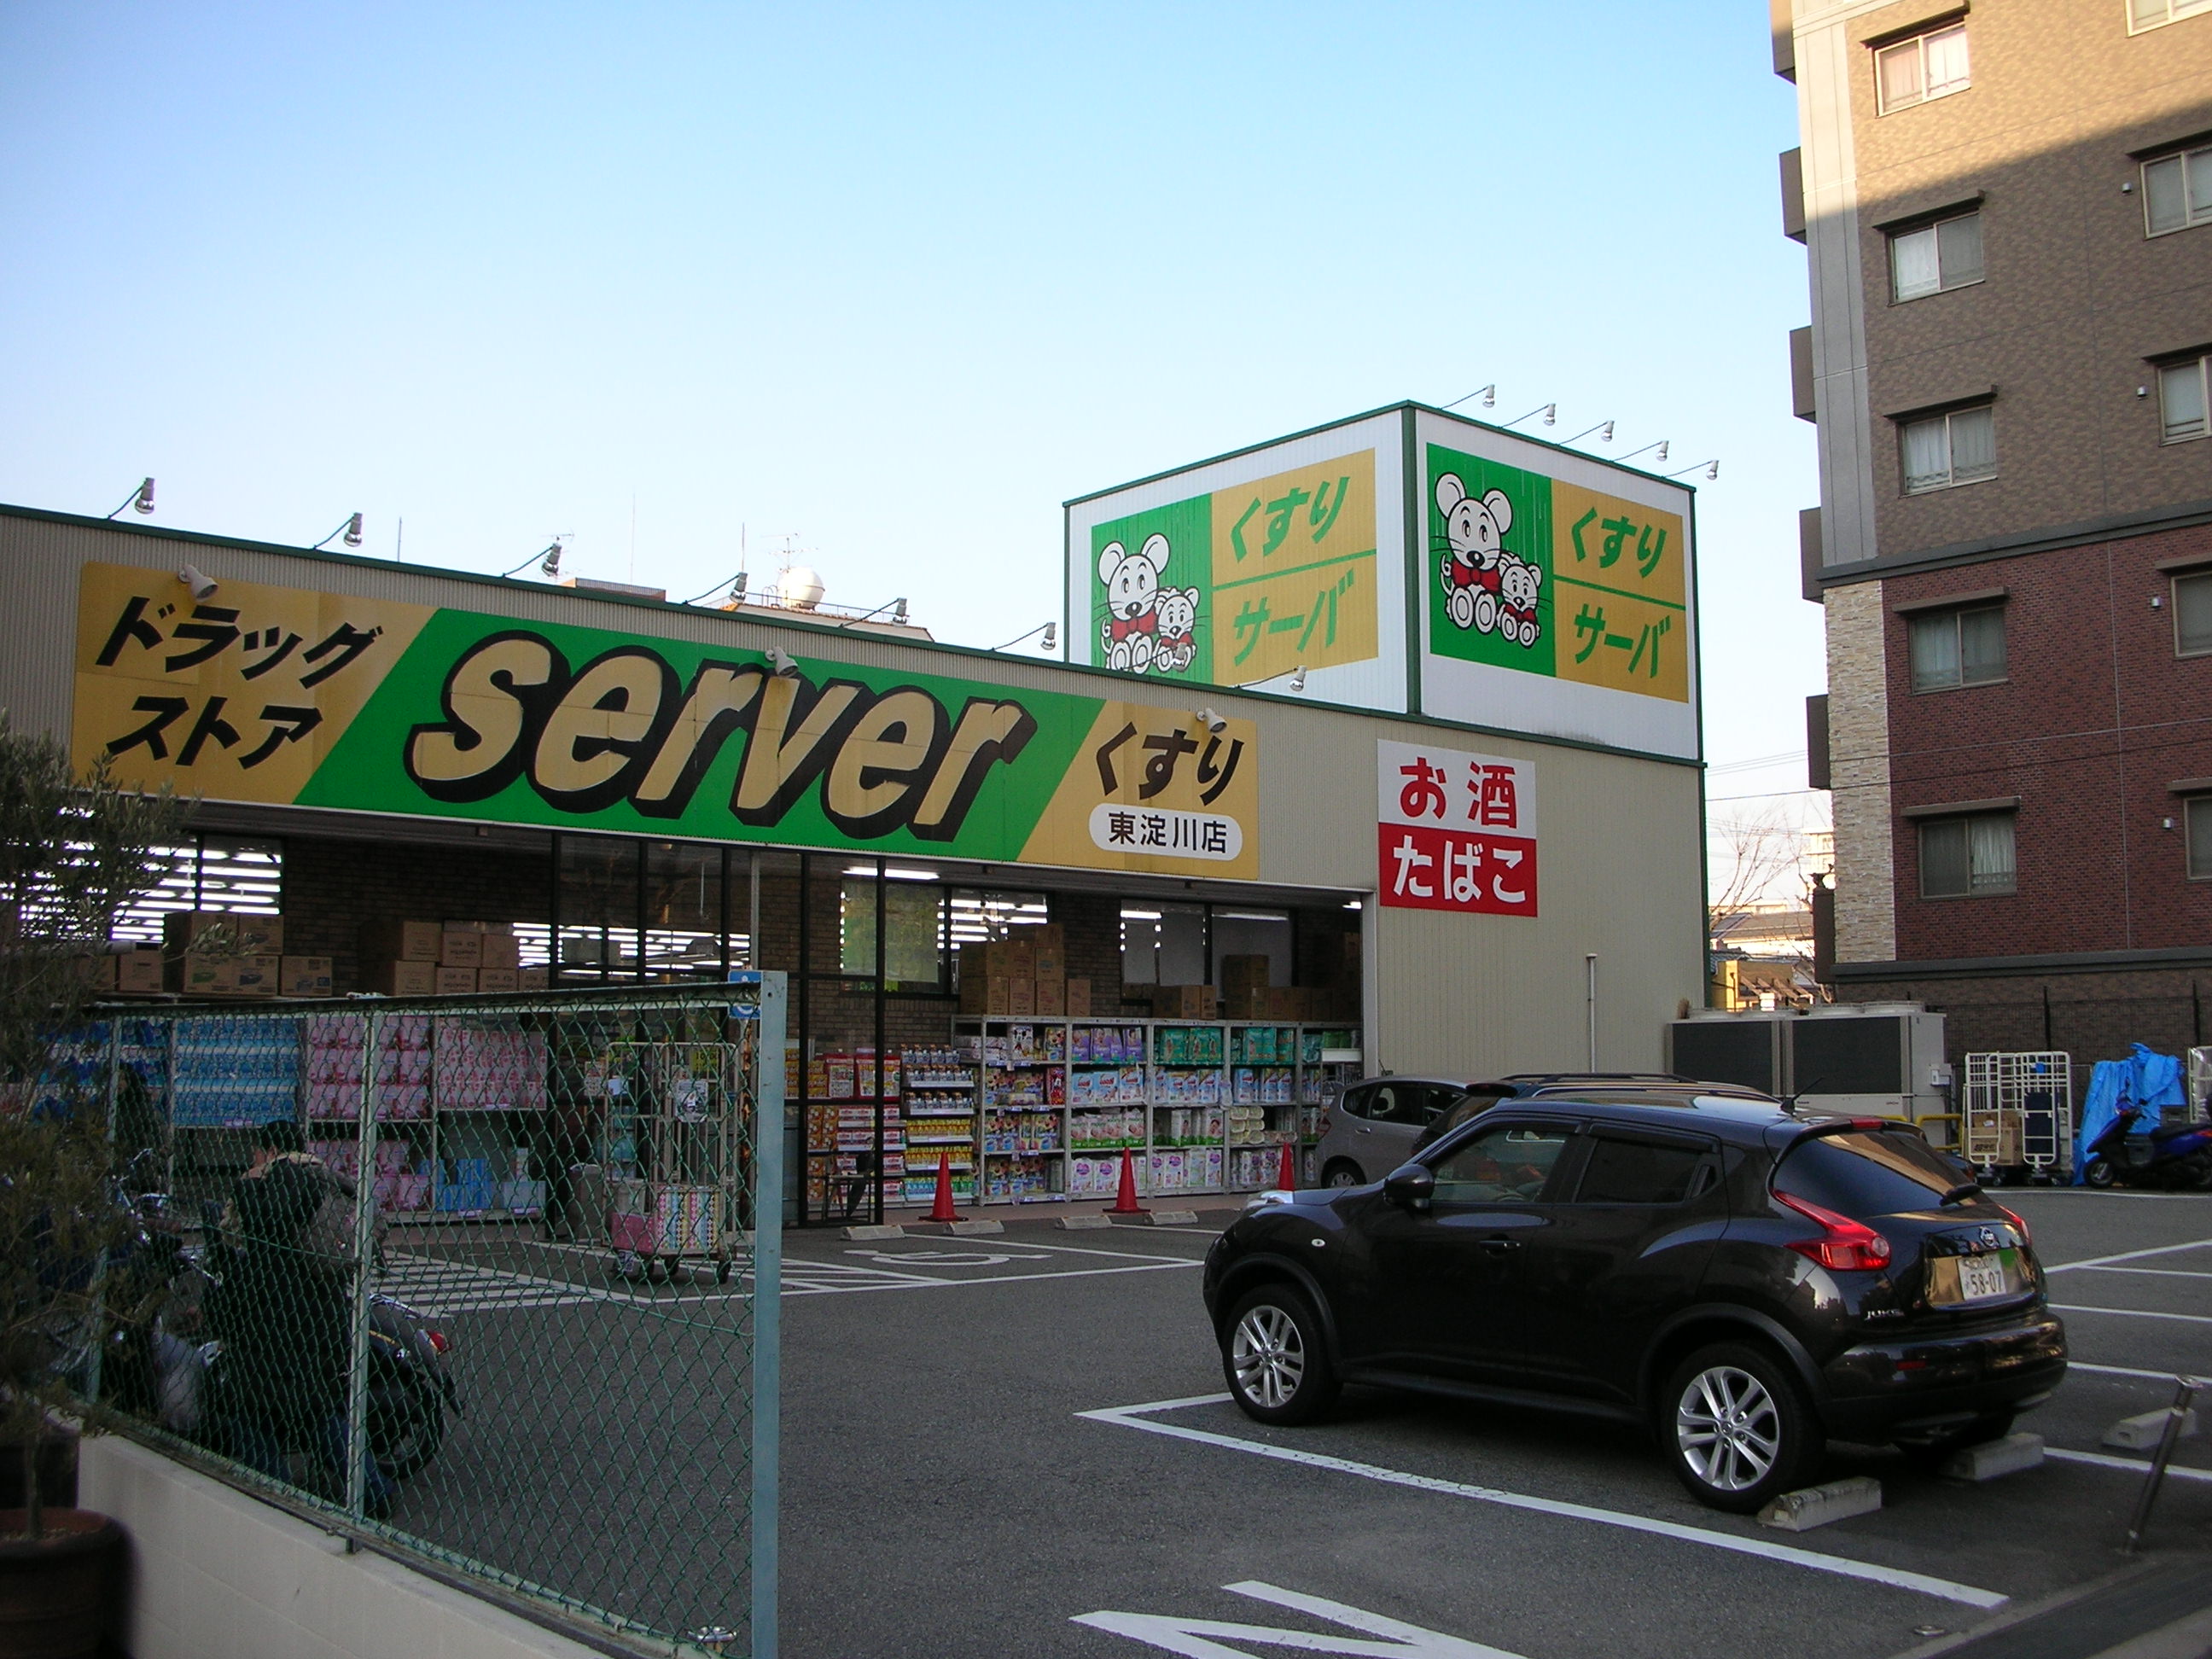 Dorakkusutoa. Drugstore server Higashiyodogawa Hoshin shop 520m until (drugstore)